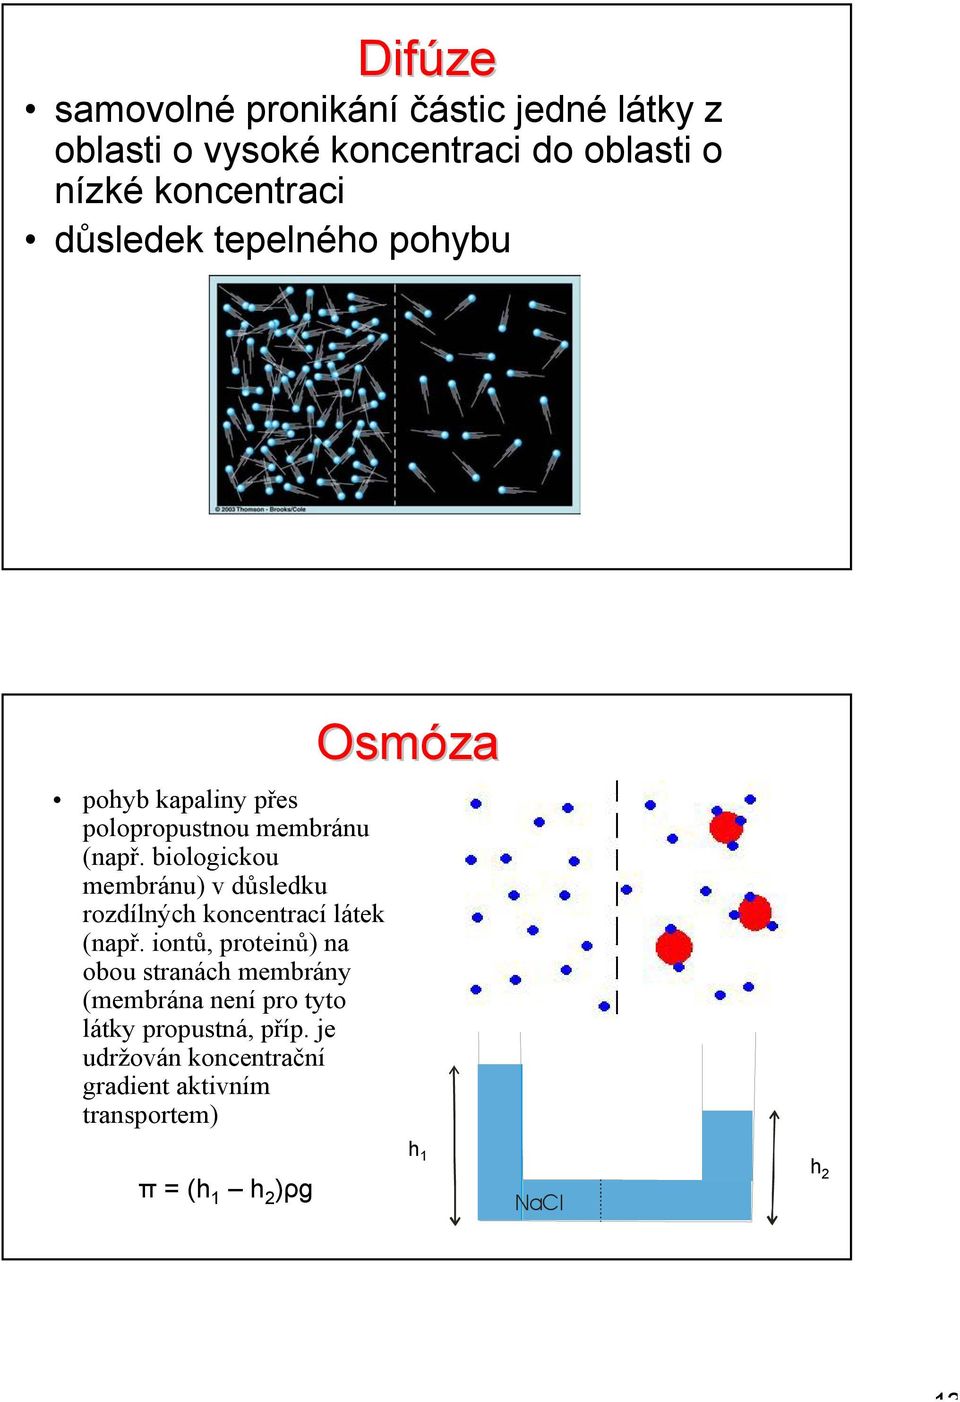 membránu) v důsledku rozdílných koncentrací látek (např iontů, proteinů) na obou stranách membrány